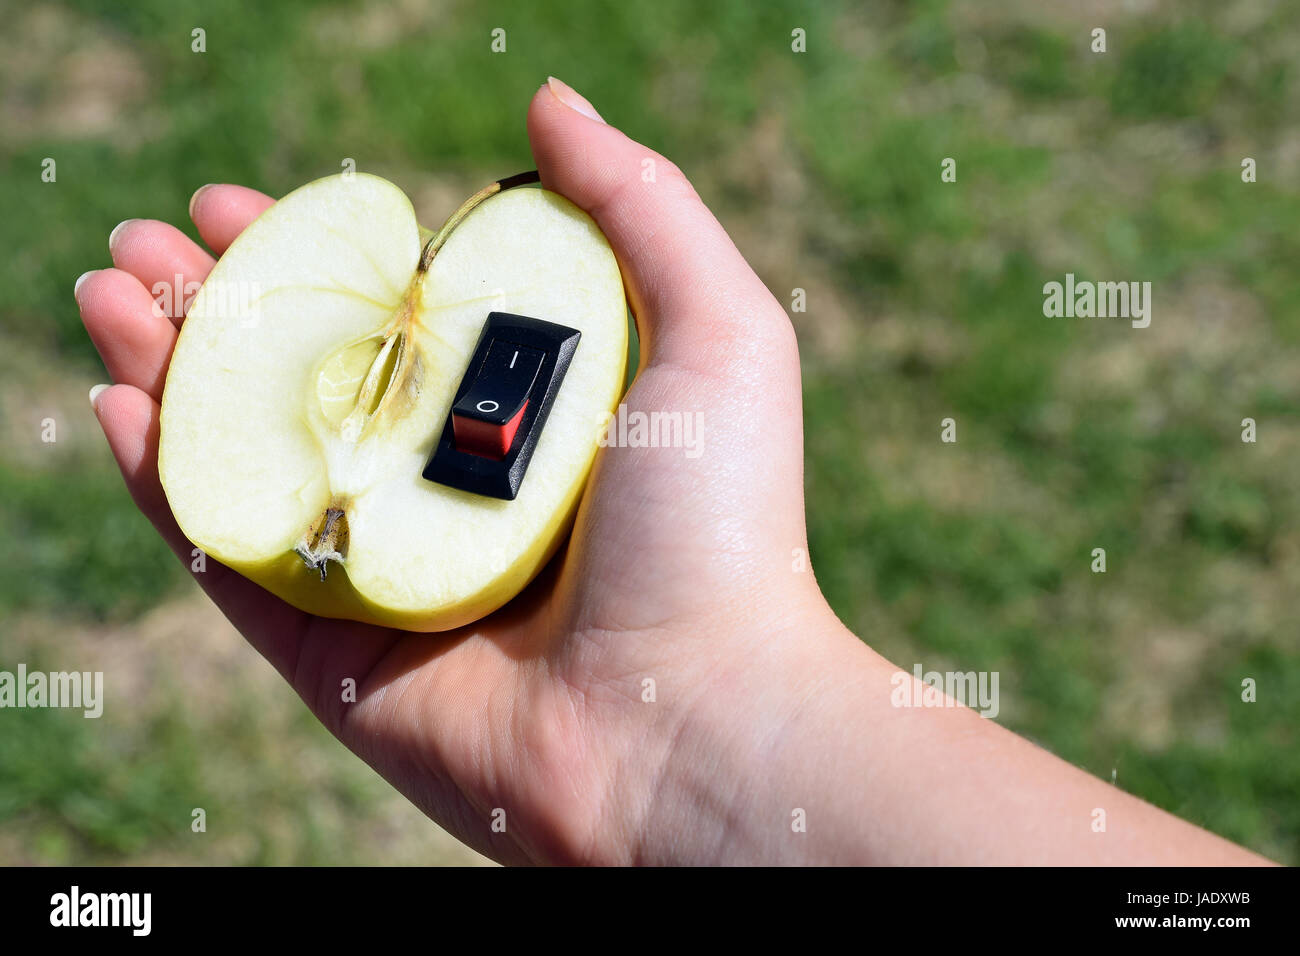 Einzigartige gesunde Ernährung Konzept. Hand hält Apfel mit eingefügten ein-/Ausschalter im Sinne einer Änderung zu gesünderen Leben. Stockfoto